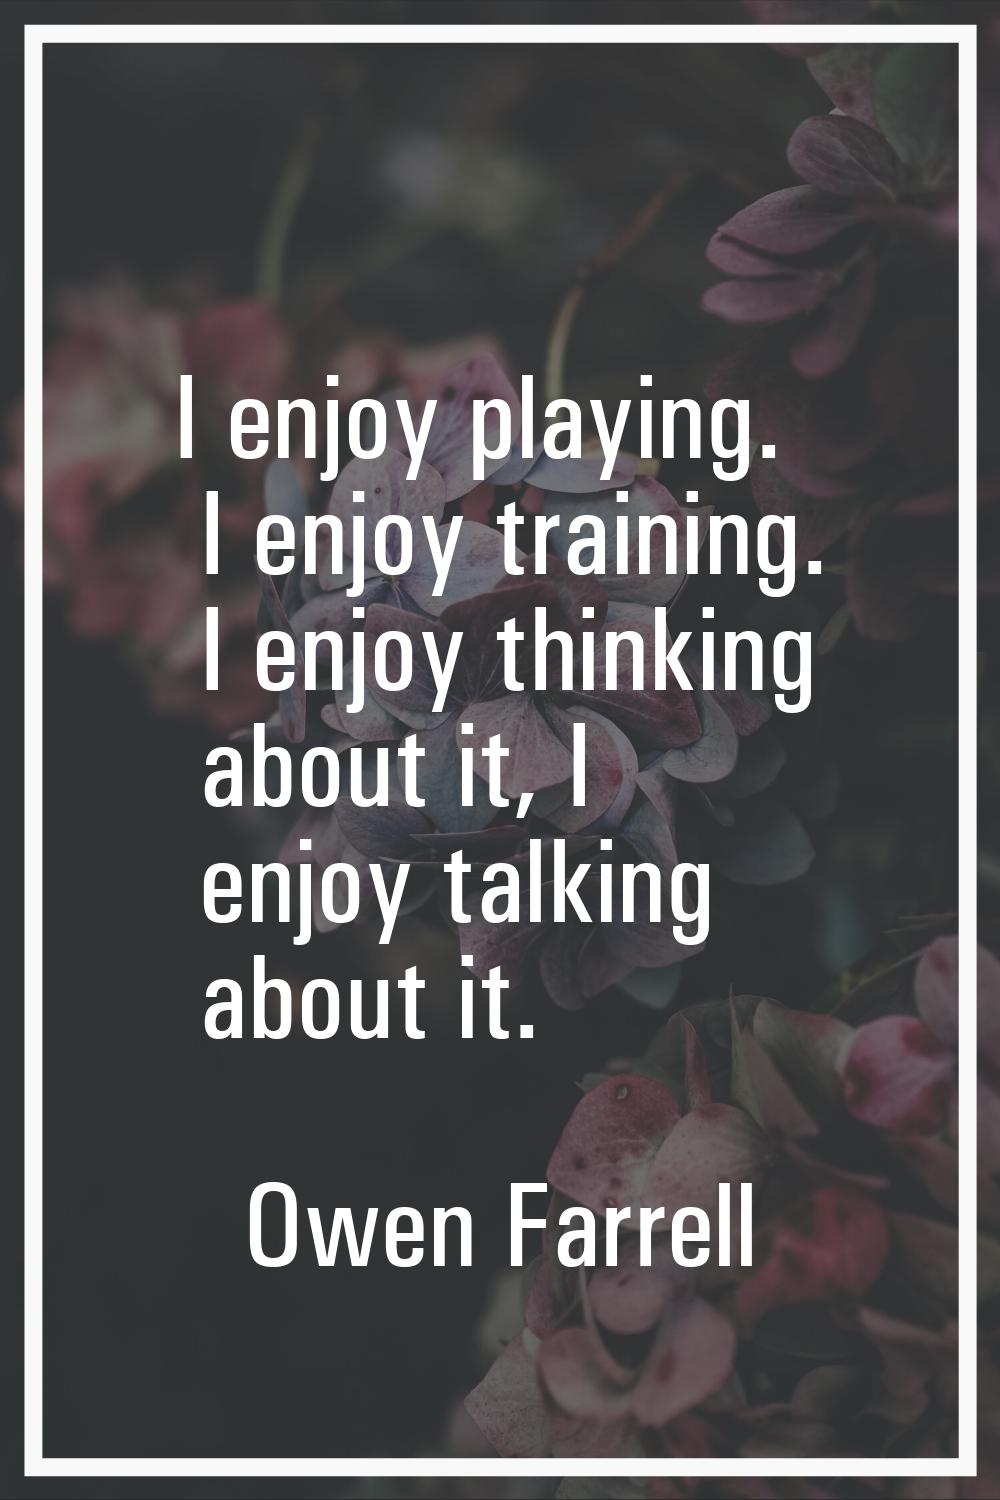 I enjoy playing. I enjoy training. I enjoy thinking about it, I enjoy talking about it.